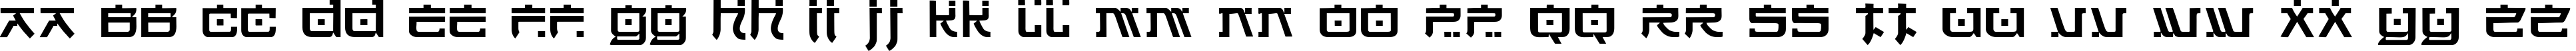 Пример написания английского алфавита шрифтом Hirosh